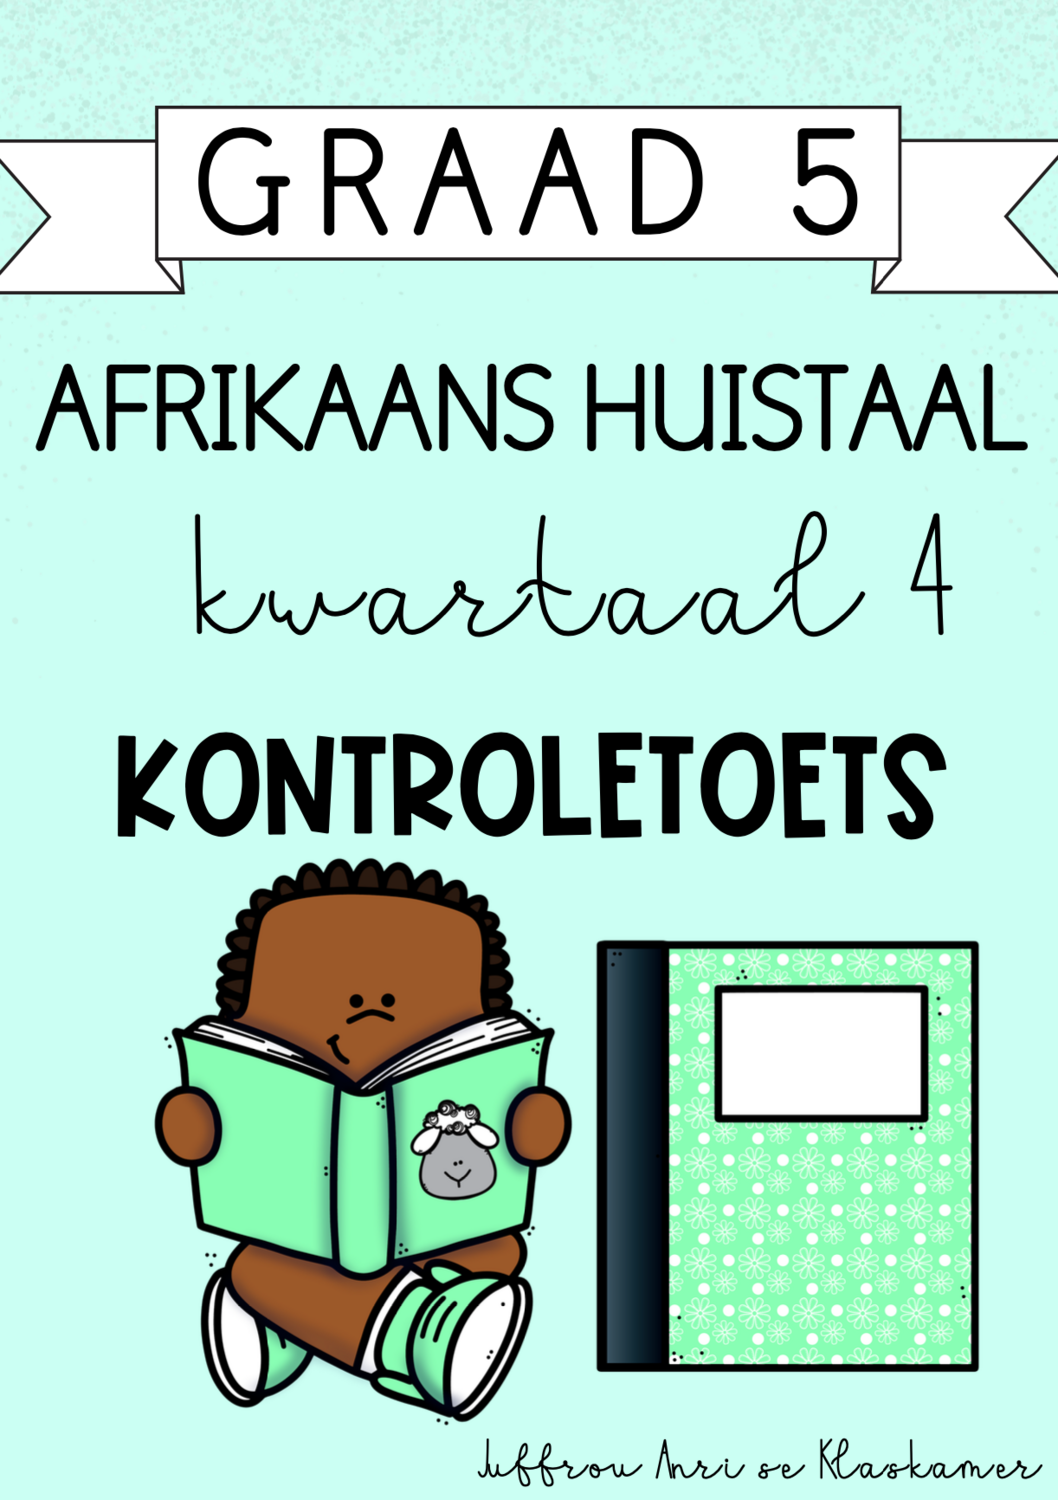 Graad 5 Afrikaans Huistaal kwartaal 4 kontroletoets (2023/2024)